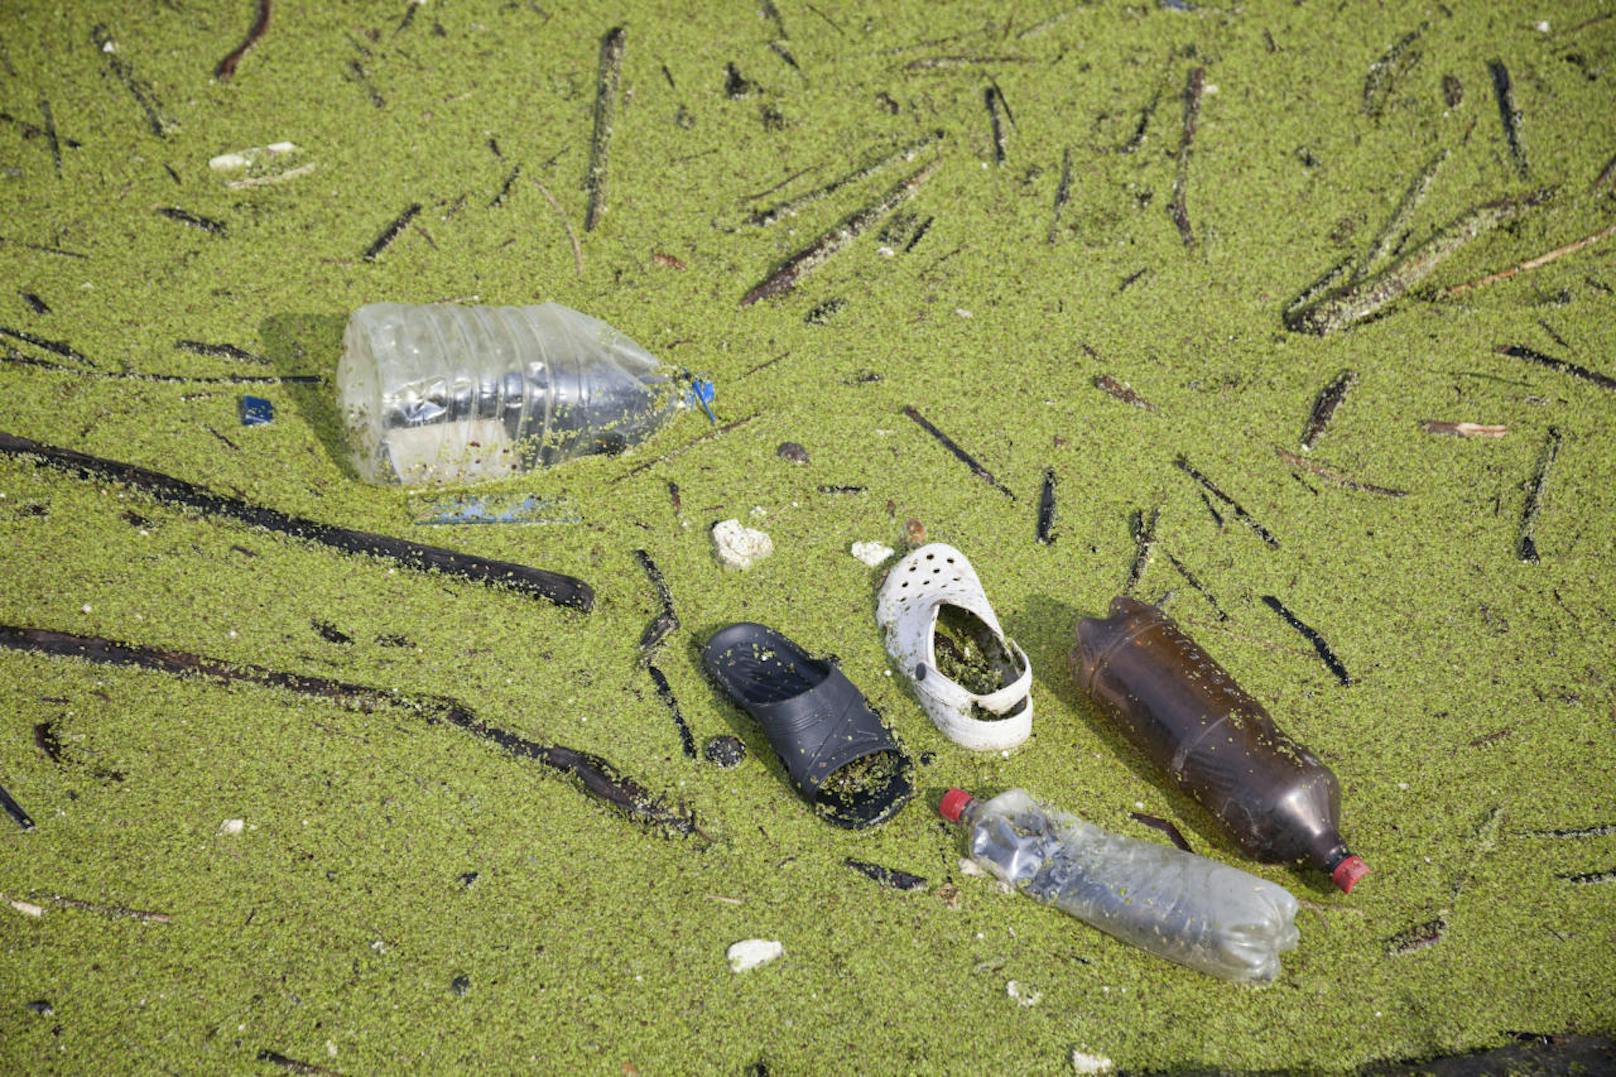 Doch die Verschmutzung der Meere setzt dem Plankton massiv zu. Laut dem schottischen Forscher Howard Dryden muss bis in zehn Jahren eine Wende vollbracht sein, da sonst das Ökosystem der Meere kollabieren werde.